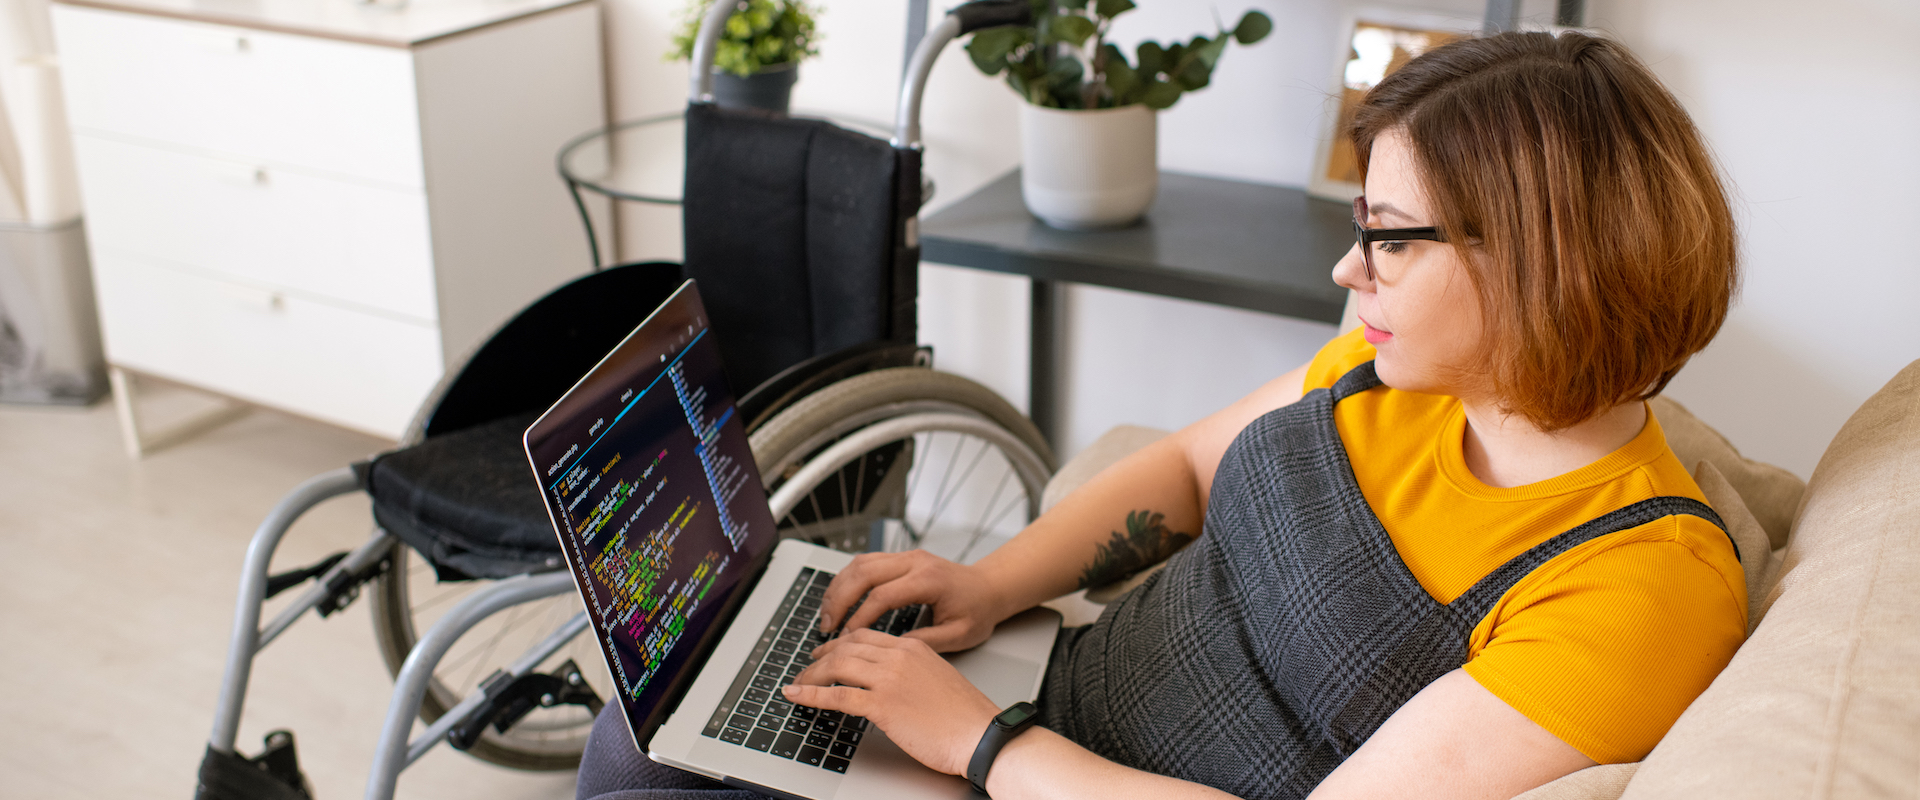 Eine Frau im Rollstuhl arbeitet am Computer